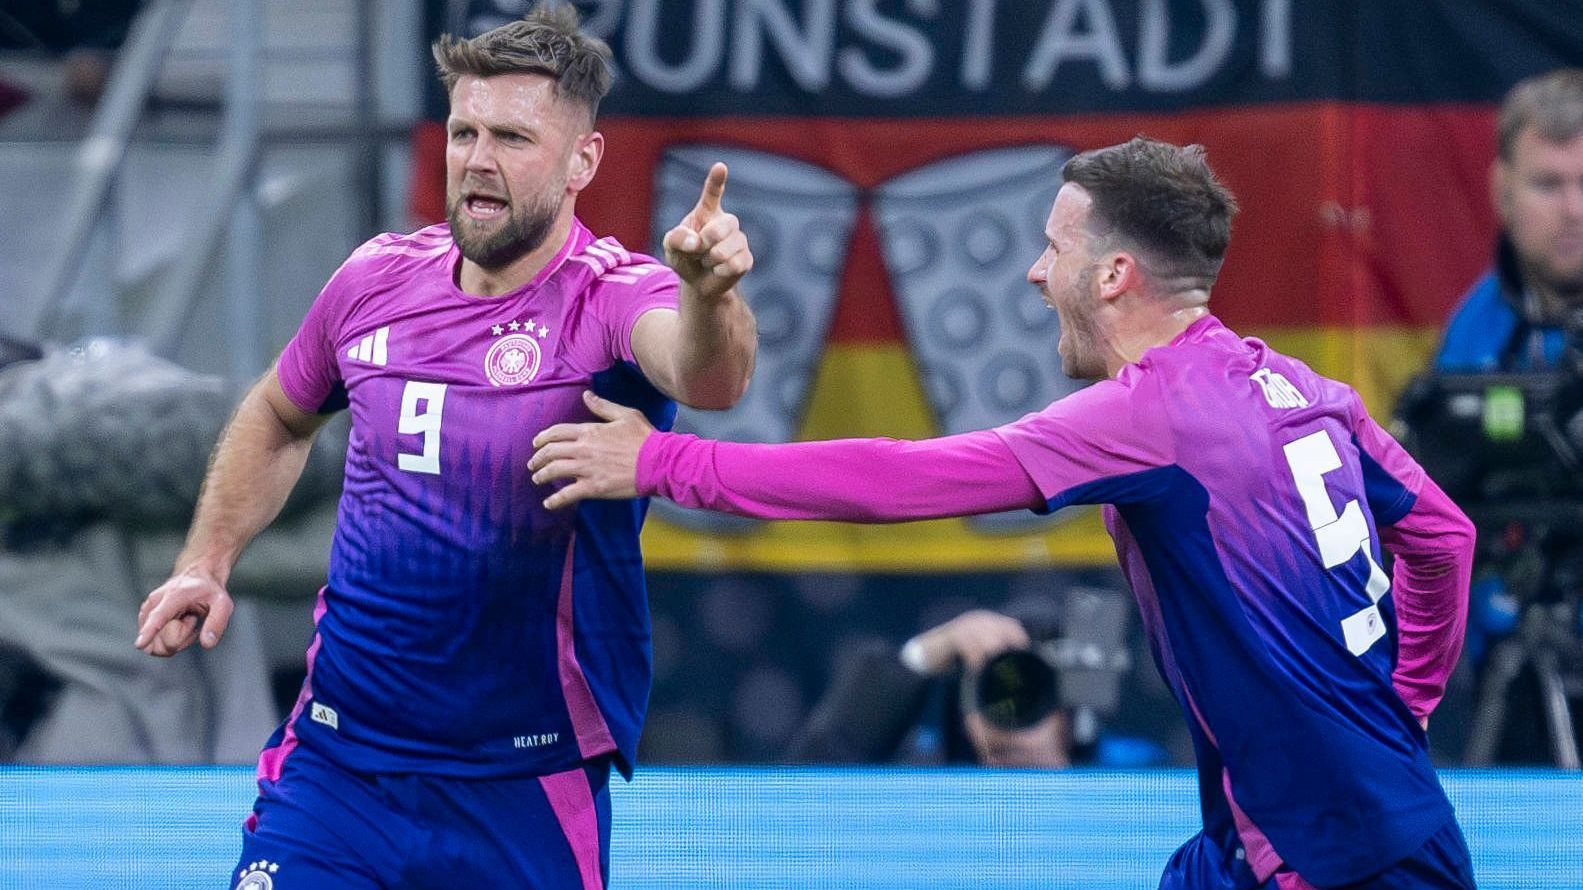 <strong>kicker (Deutschland)</strong><br>Füllkrugs Schulter lässt Deutschland spät jubeln. Die deutsche Nationalmannschaft hat auch das zweite Länderspiel im neuen Jahr gewonnen. Gegen die Niederlande bewies das DFB-Team nach einem frühen Rückstand Moral und drehte das Spiel spät.